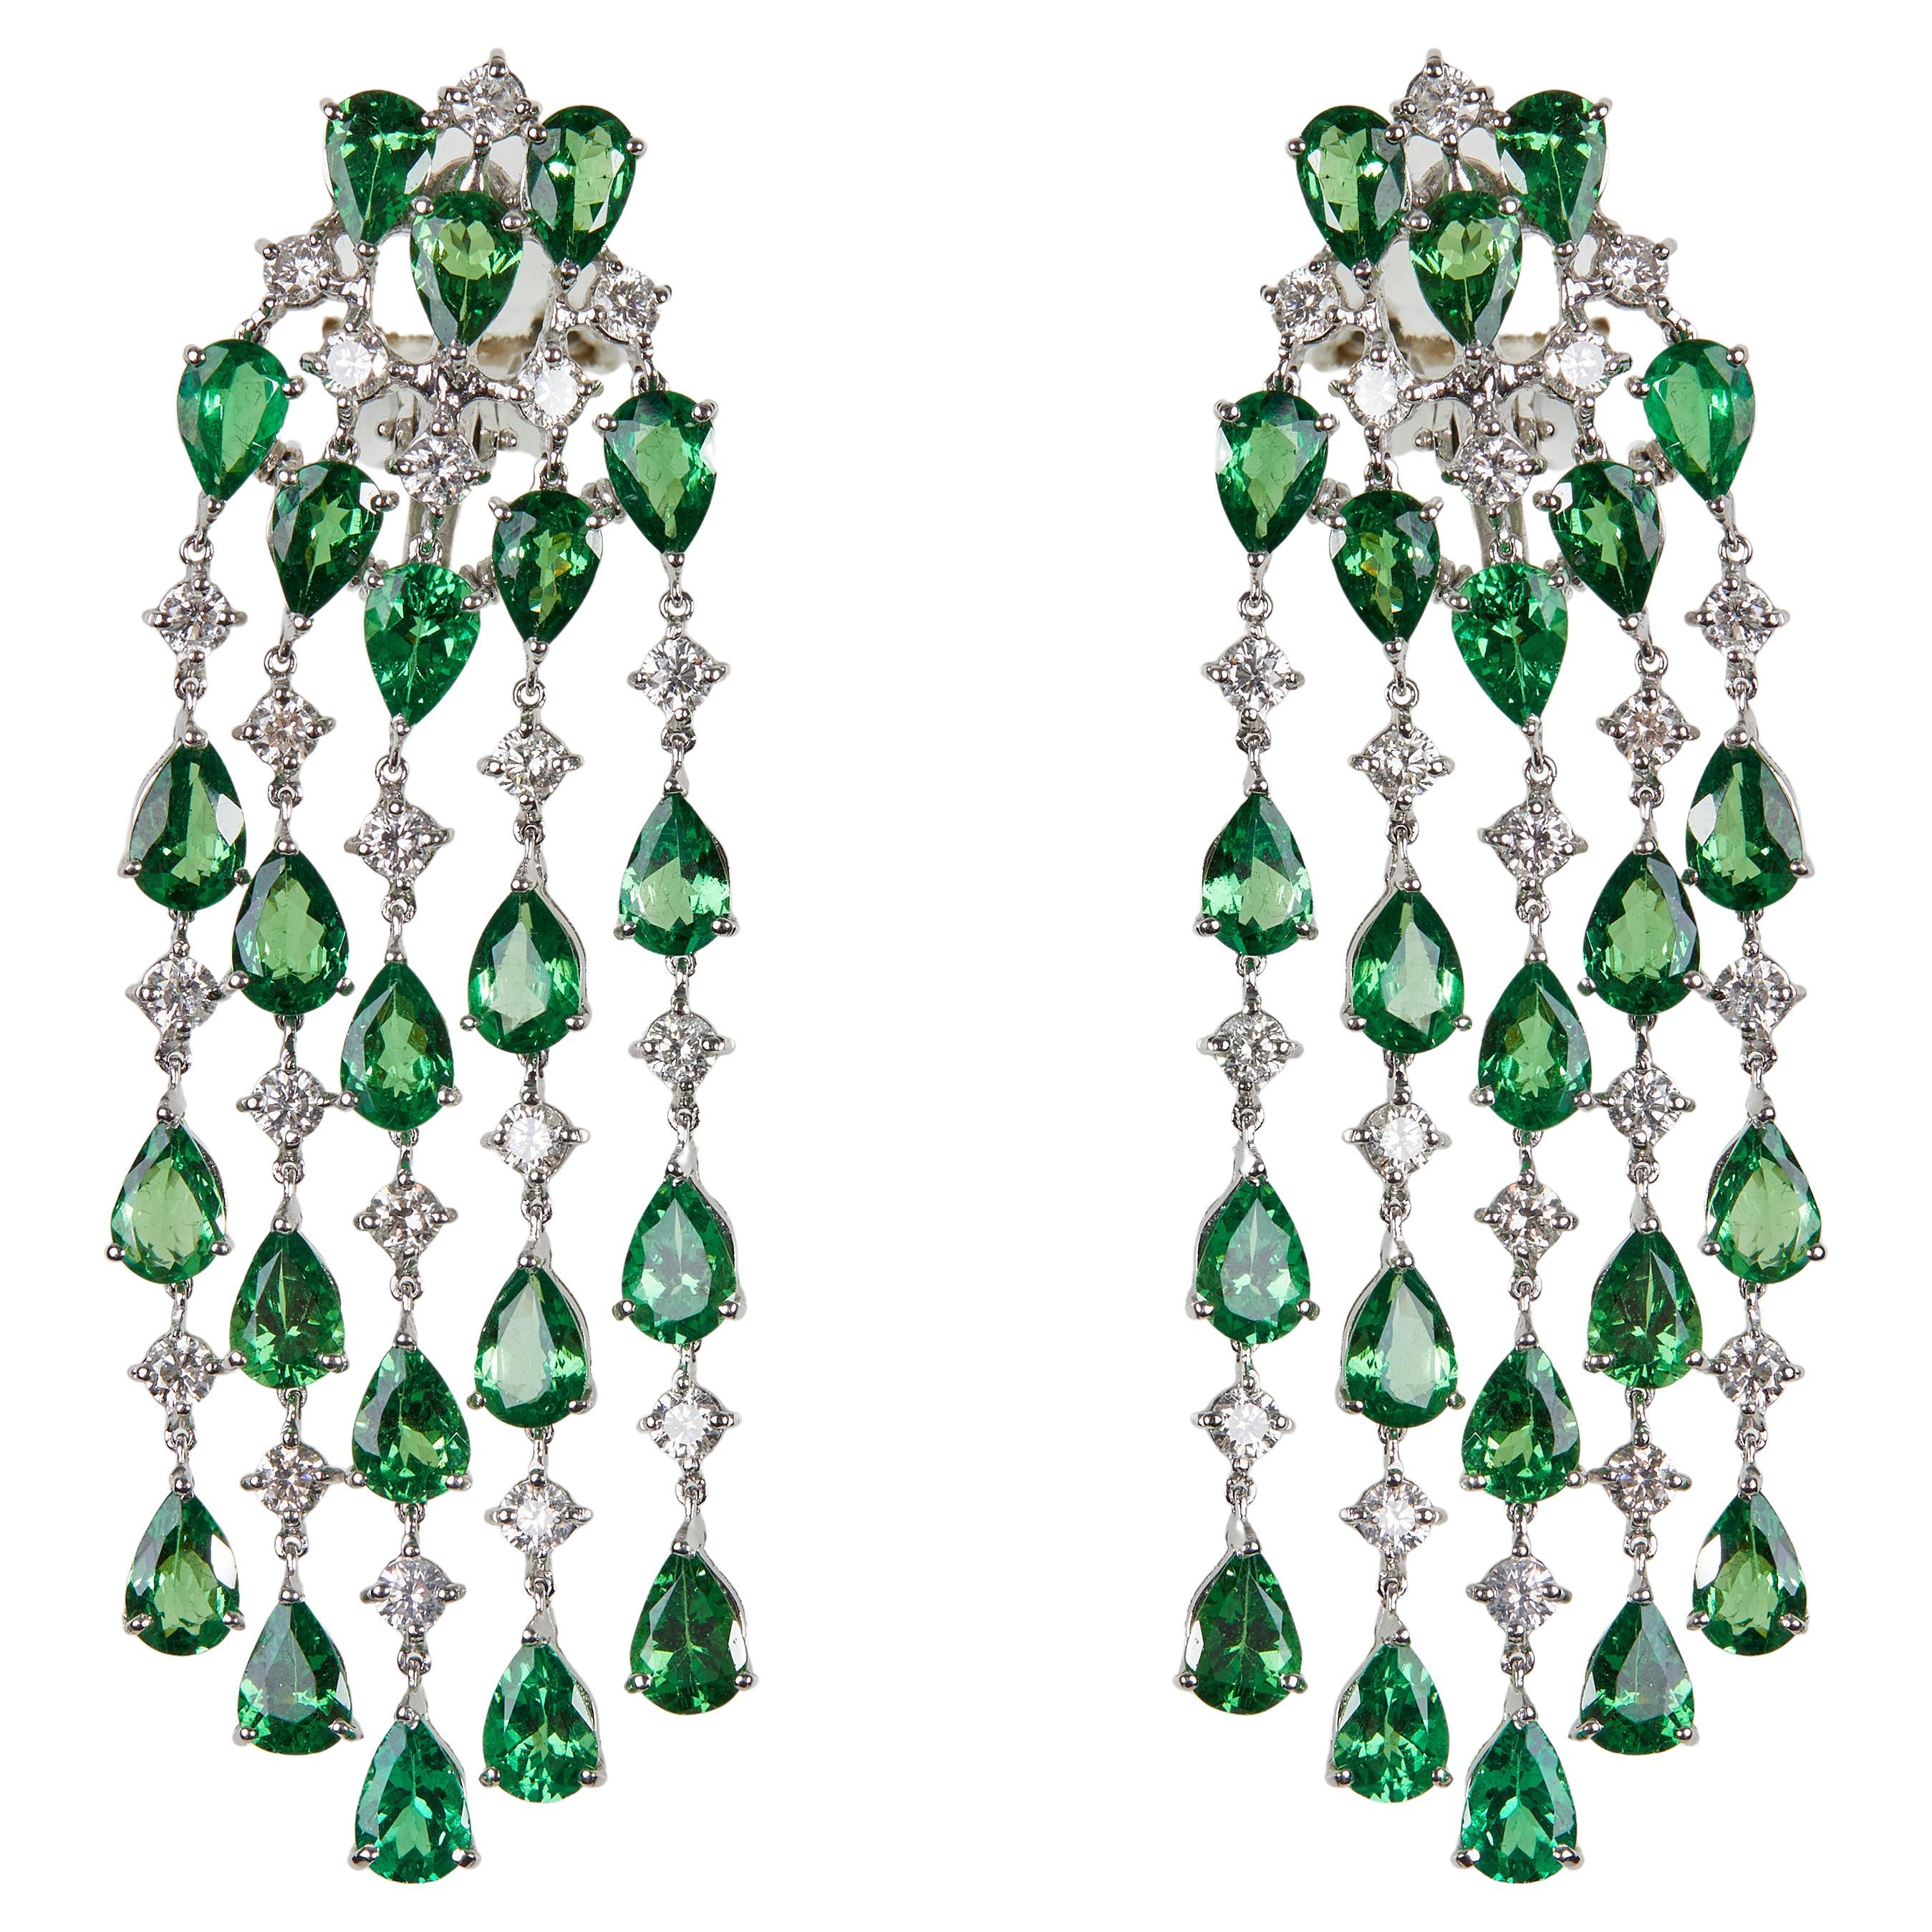 Gianni Lazzaro Tsavorite 18K White Gold Diamond Earrings for Her